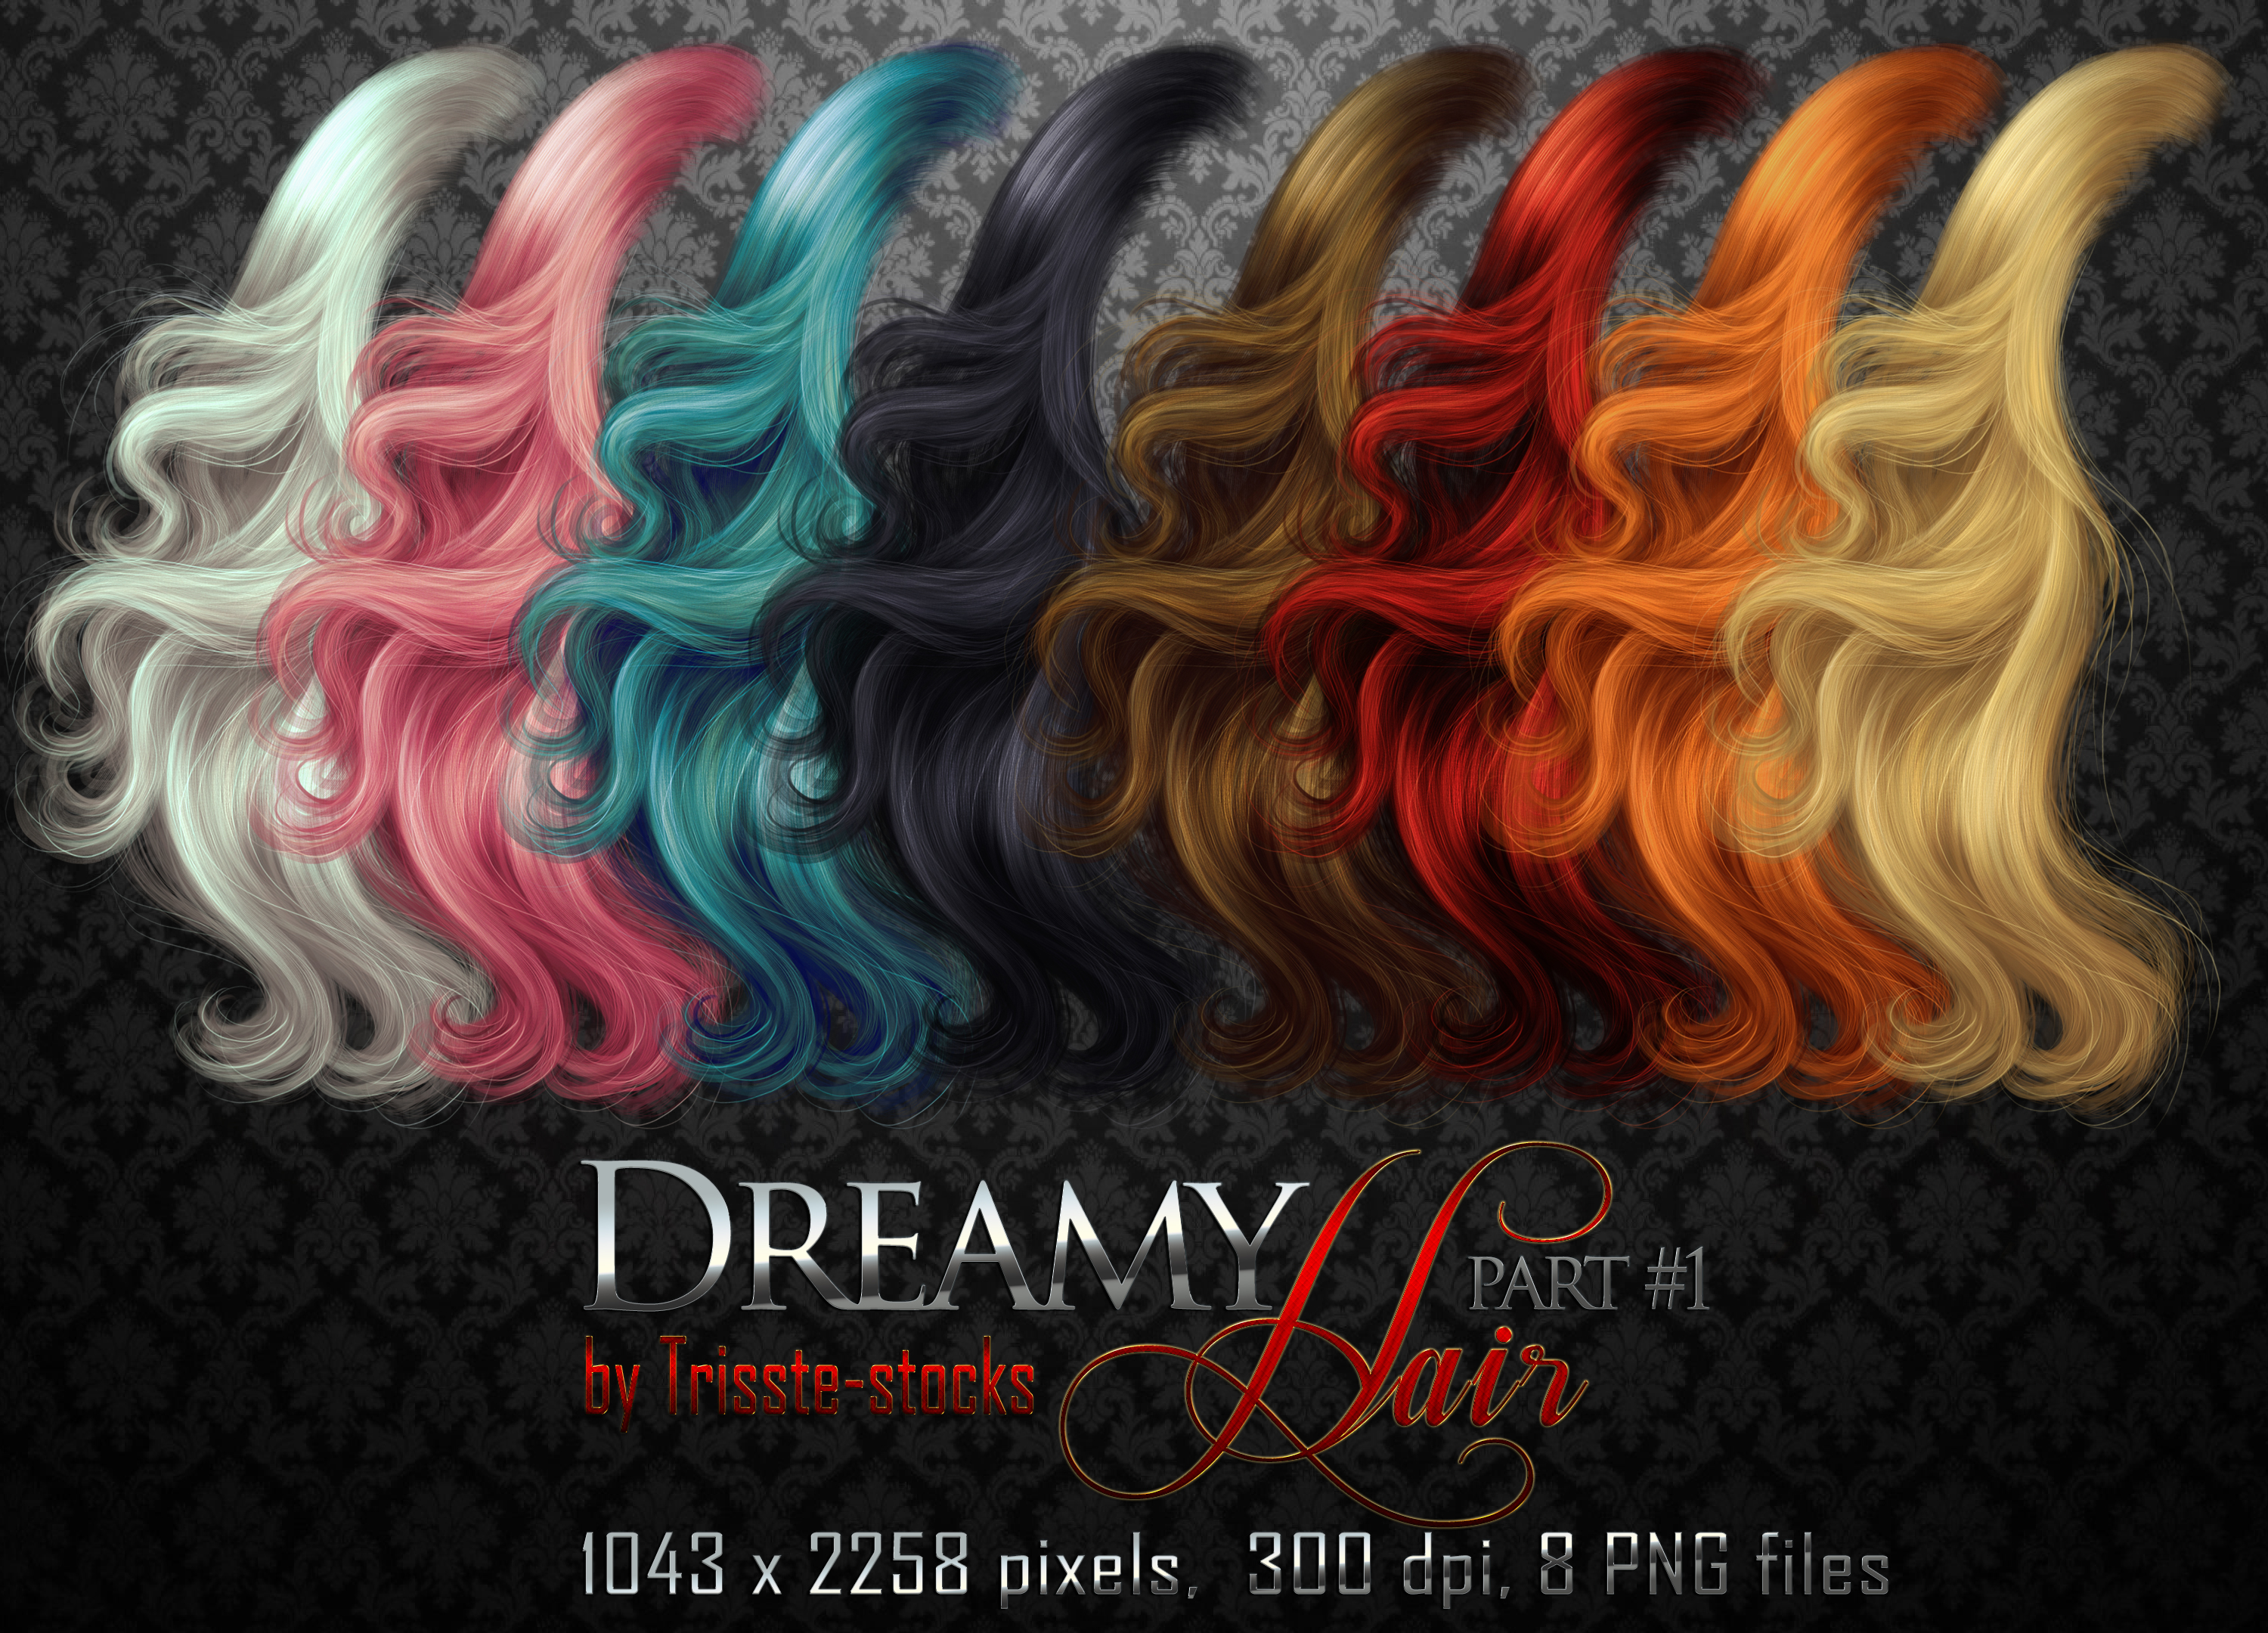 Dreamy HAIR part #1